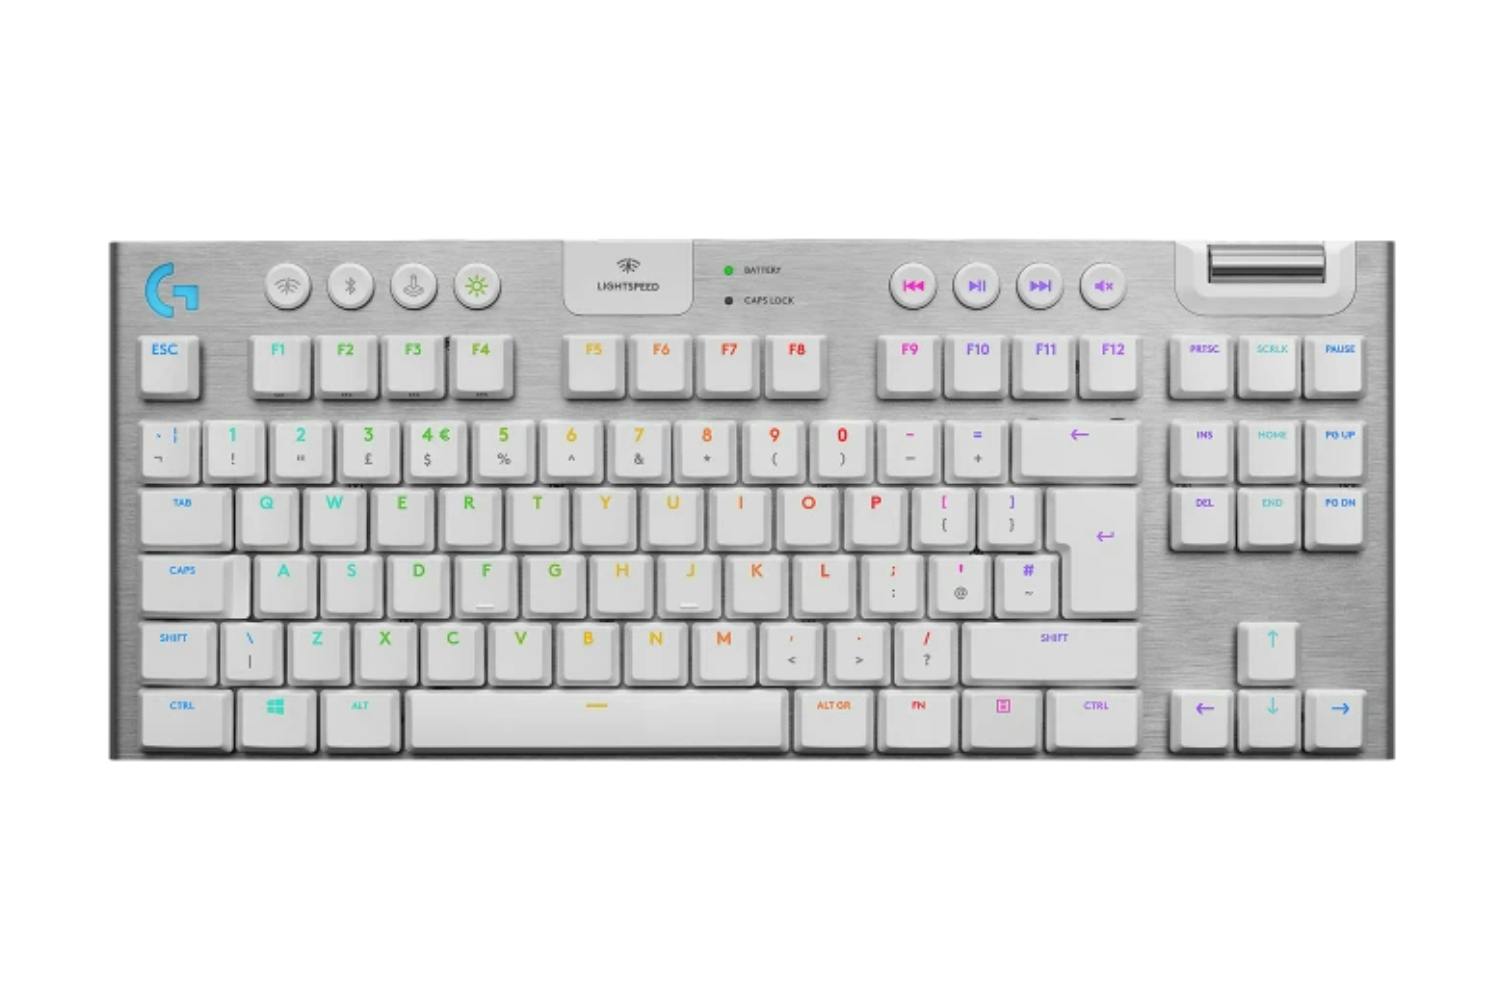 Logitech G915 TKL Wireless Keyboard